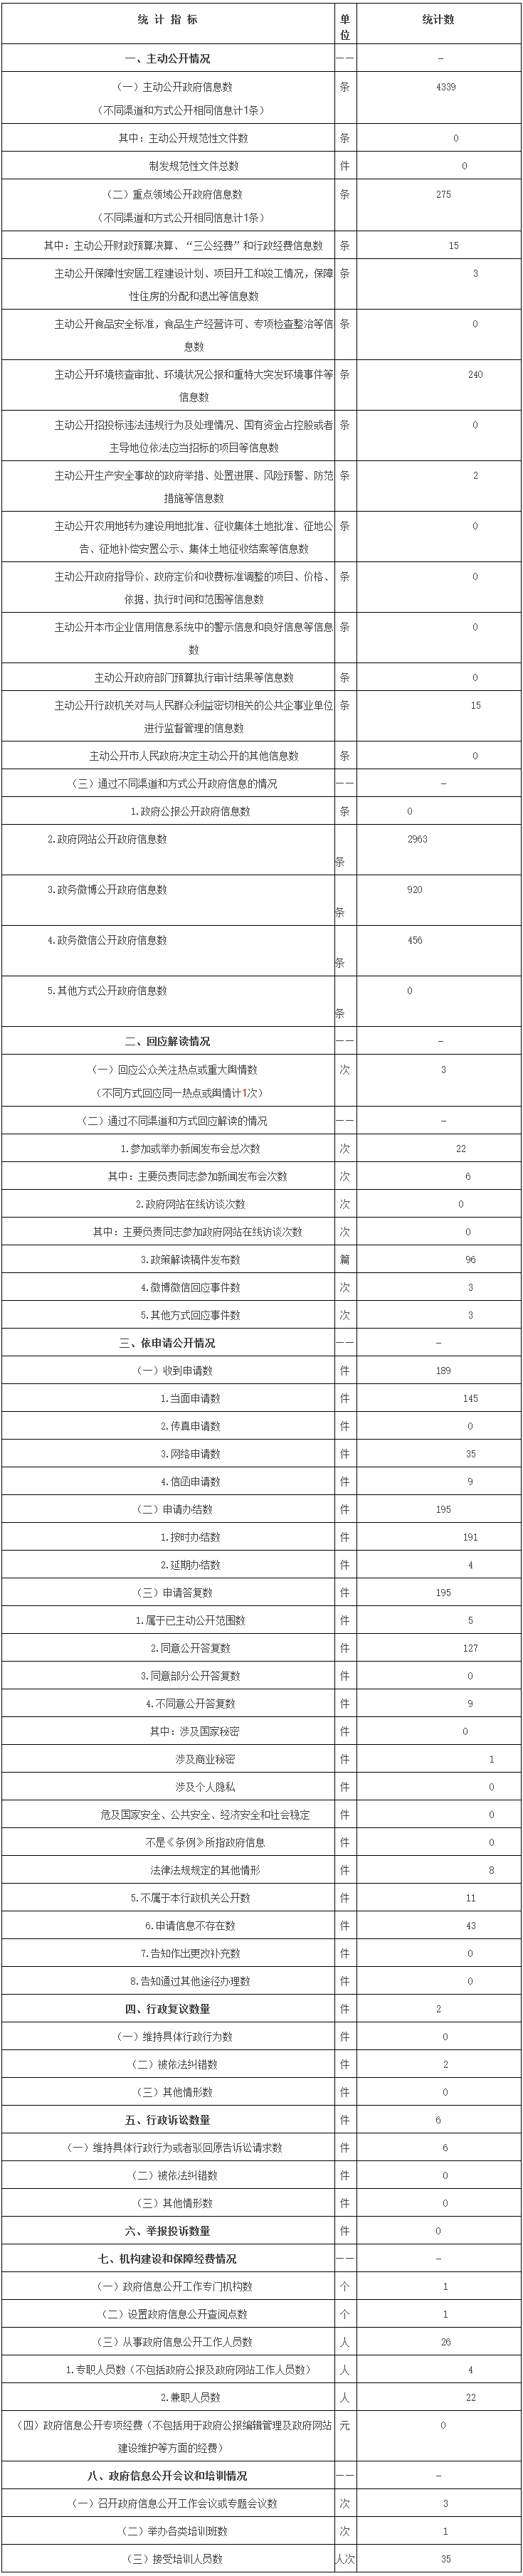 北京经济技术开发区管理委员会政府信息公开情况统计表(2017年度)